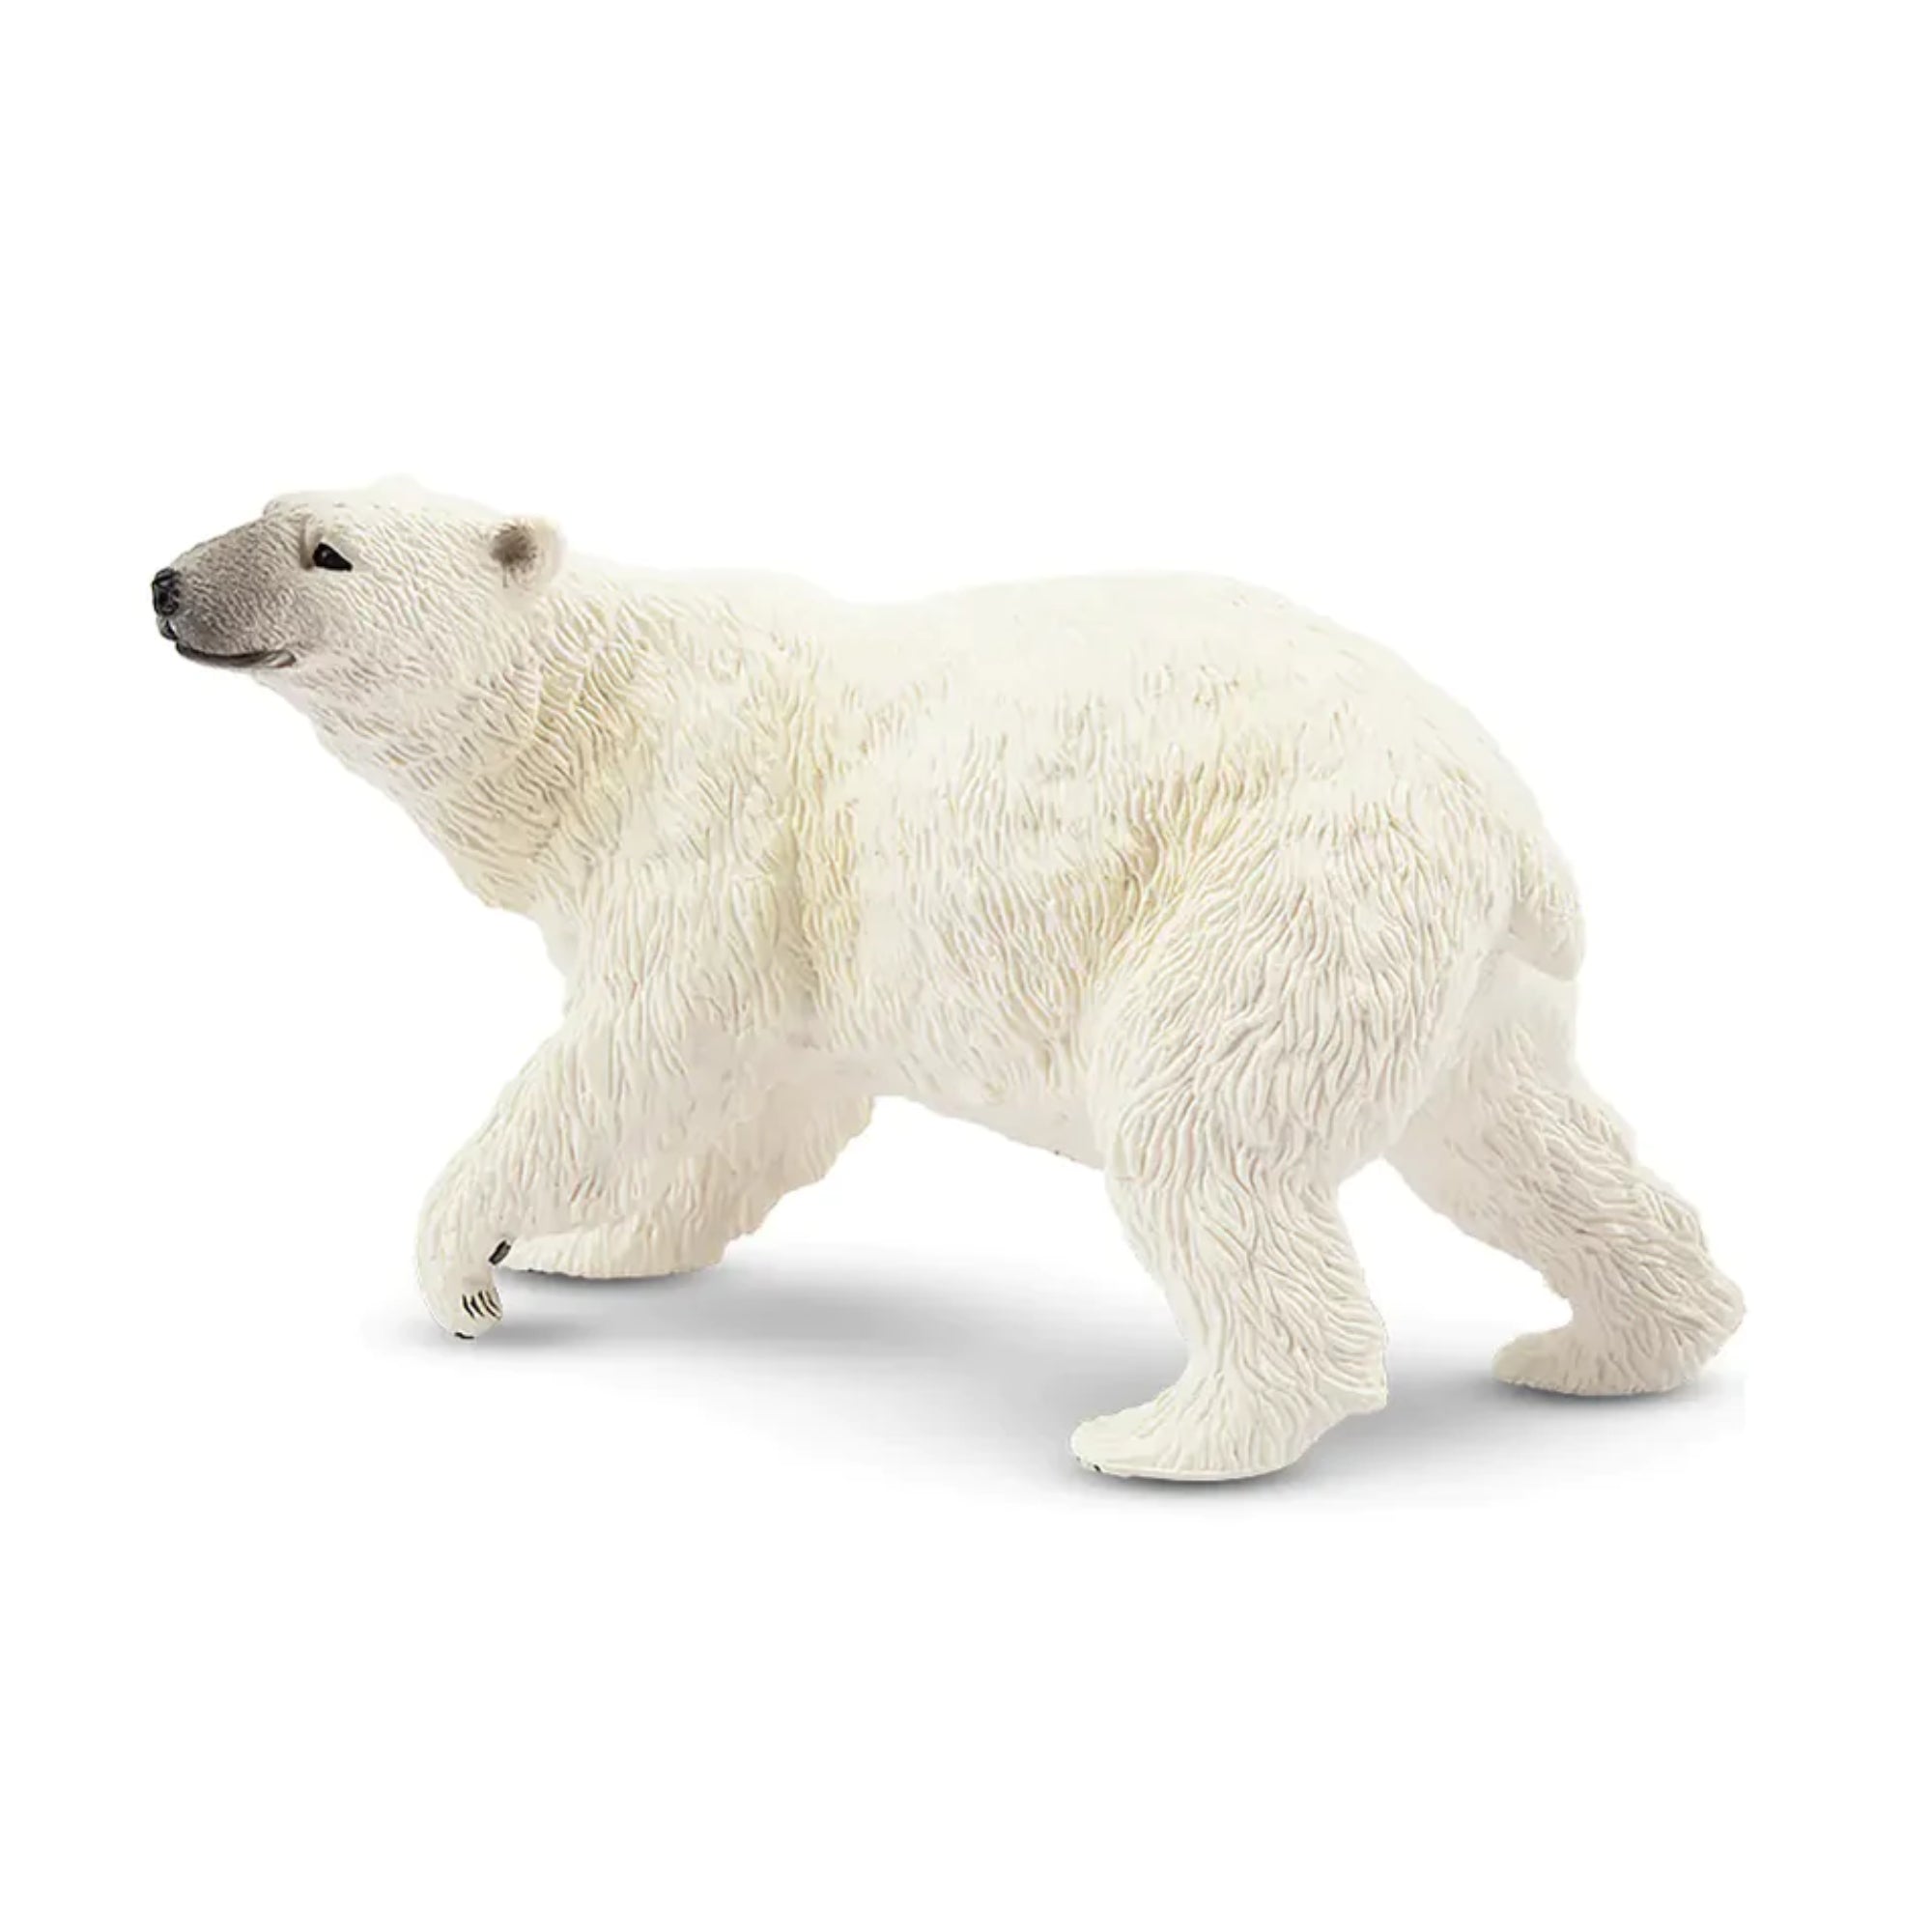 Toymany Male Polar Bear Figurine Toy